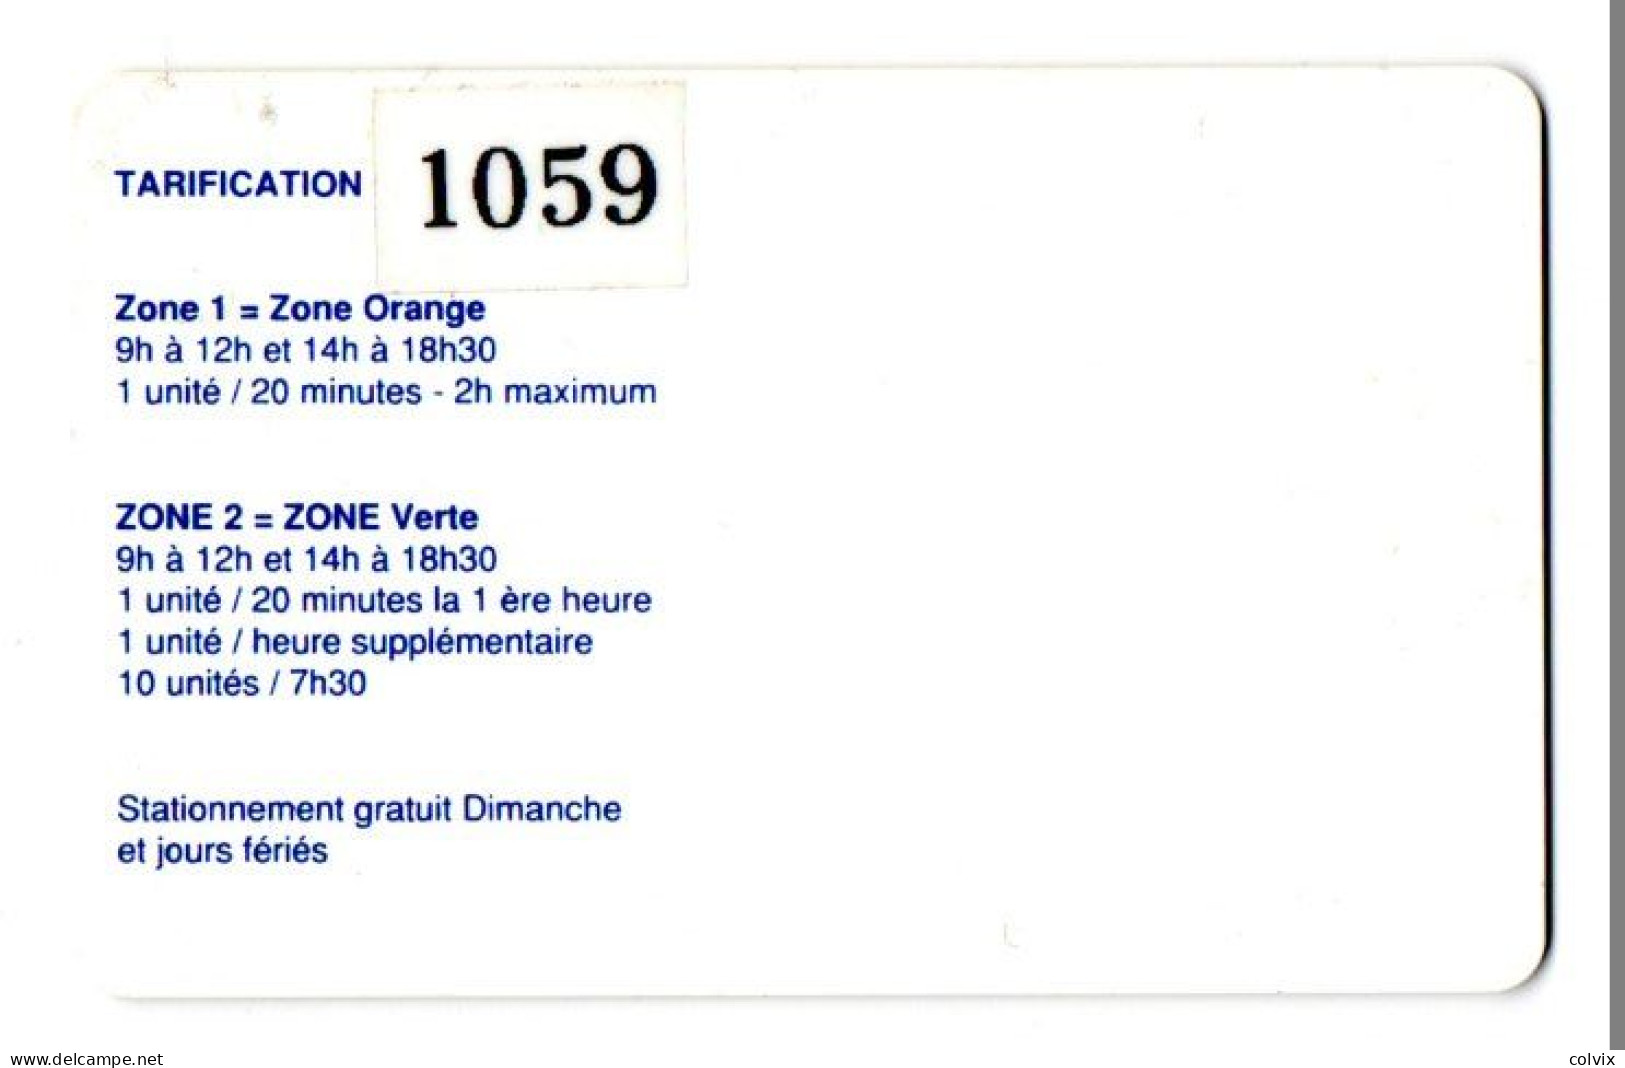 PIAF ROCHEFORT - Ref PIAF 17300-3 200U Date 07/94 1000 Ex LA FAYETTE Avec Autocollant Au Verso - Parkkarten